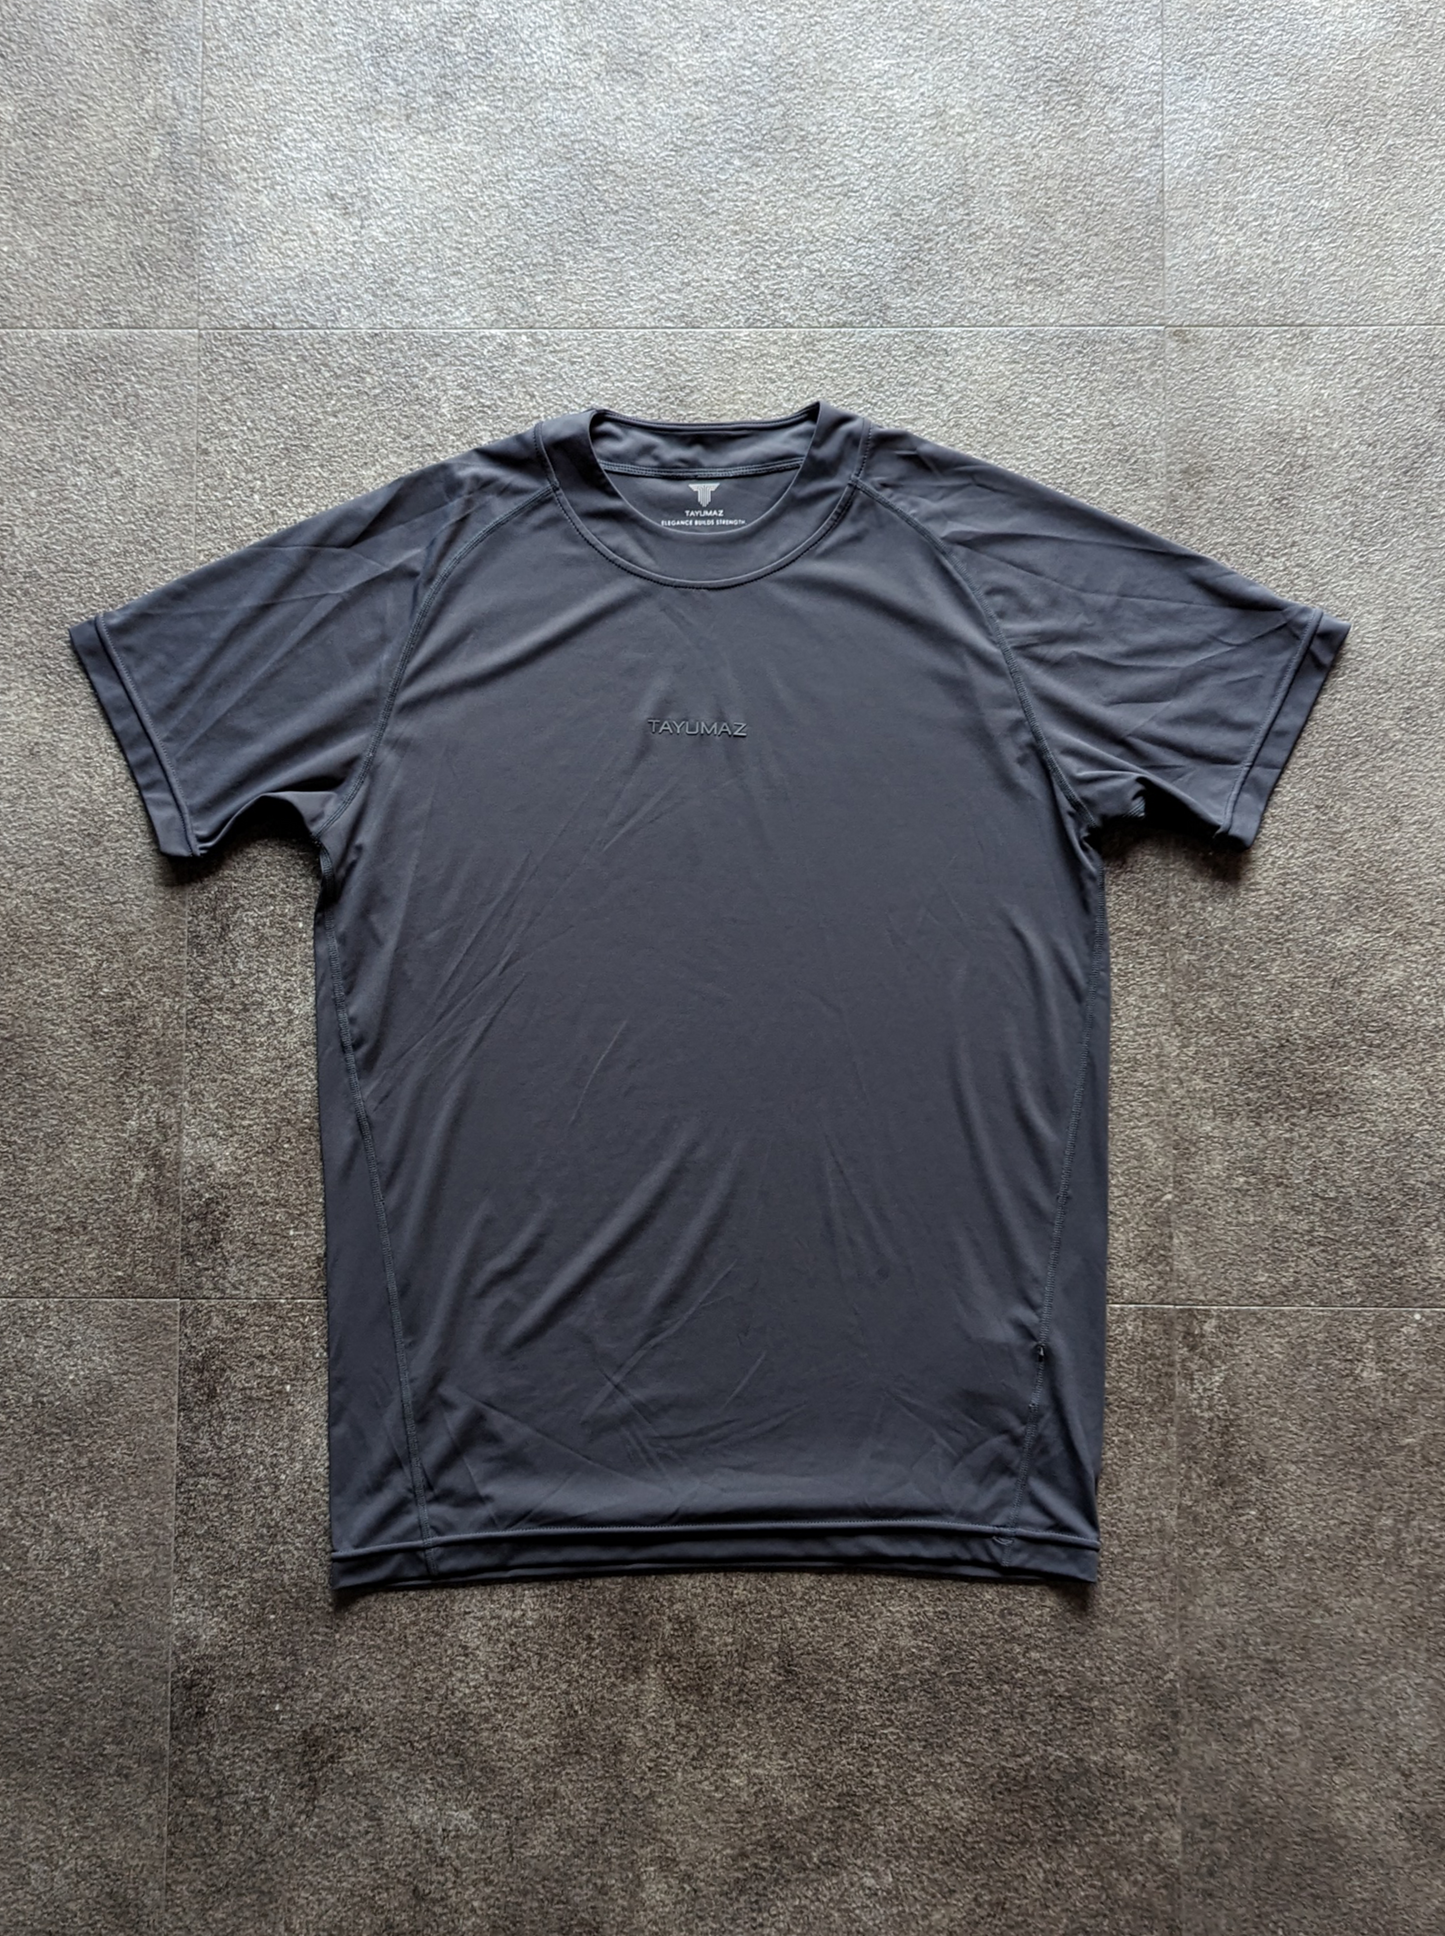 ストレッチスムースTシャツ ダークグレー 3Dシリコンロゴ